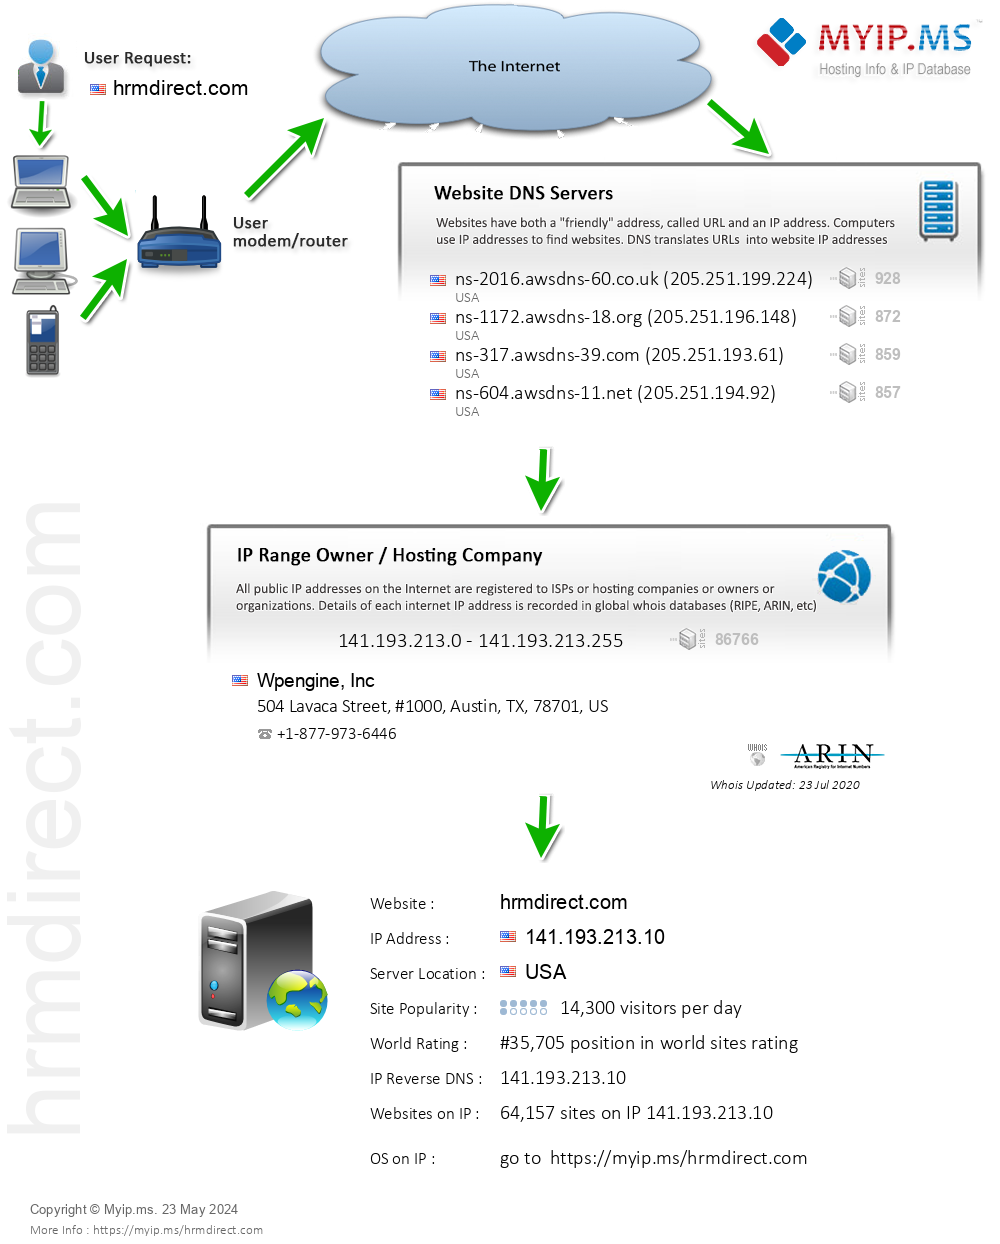 Hrmdirect.com - Website Hosting Visual IP Diagram